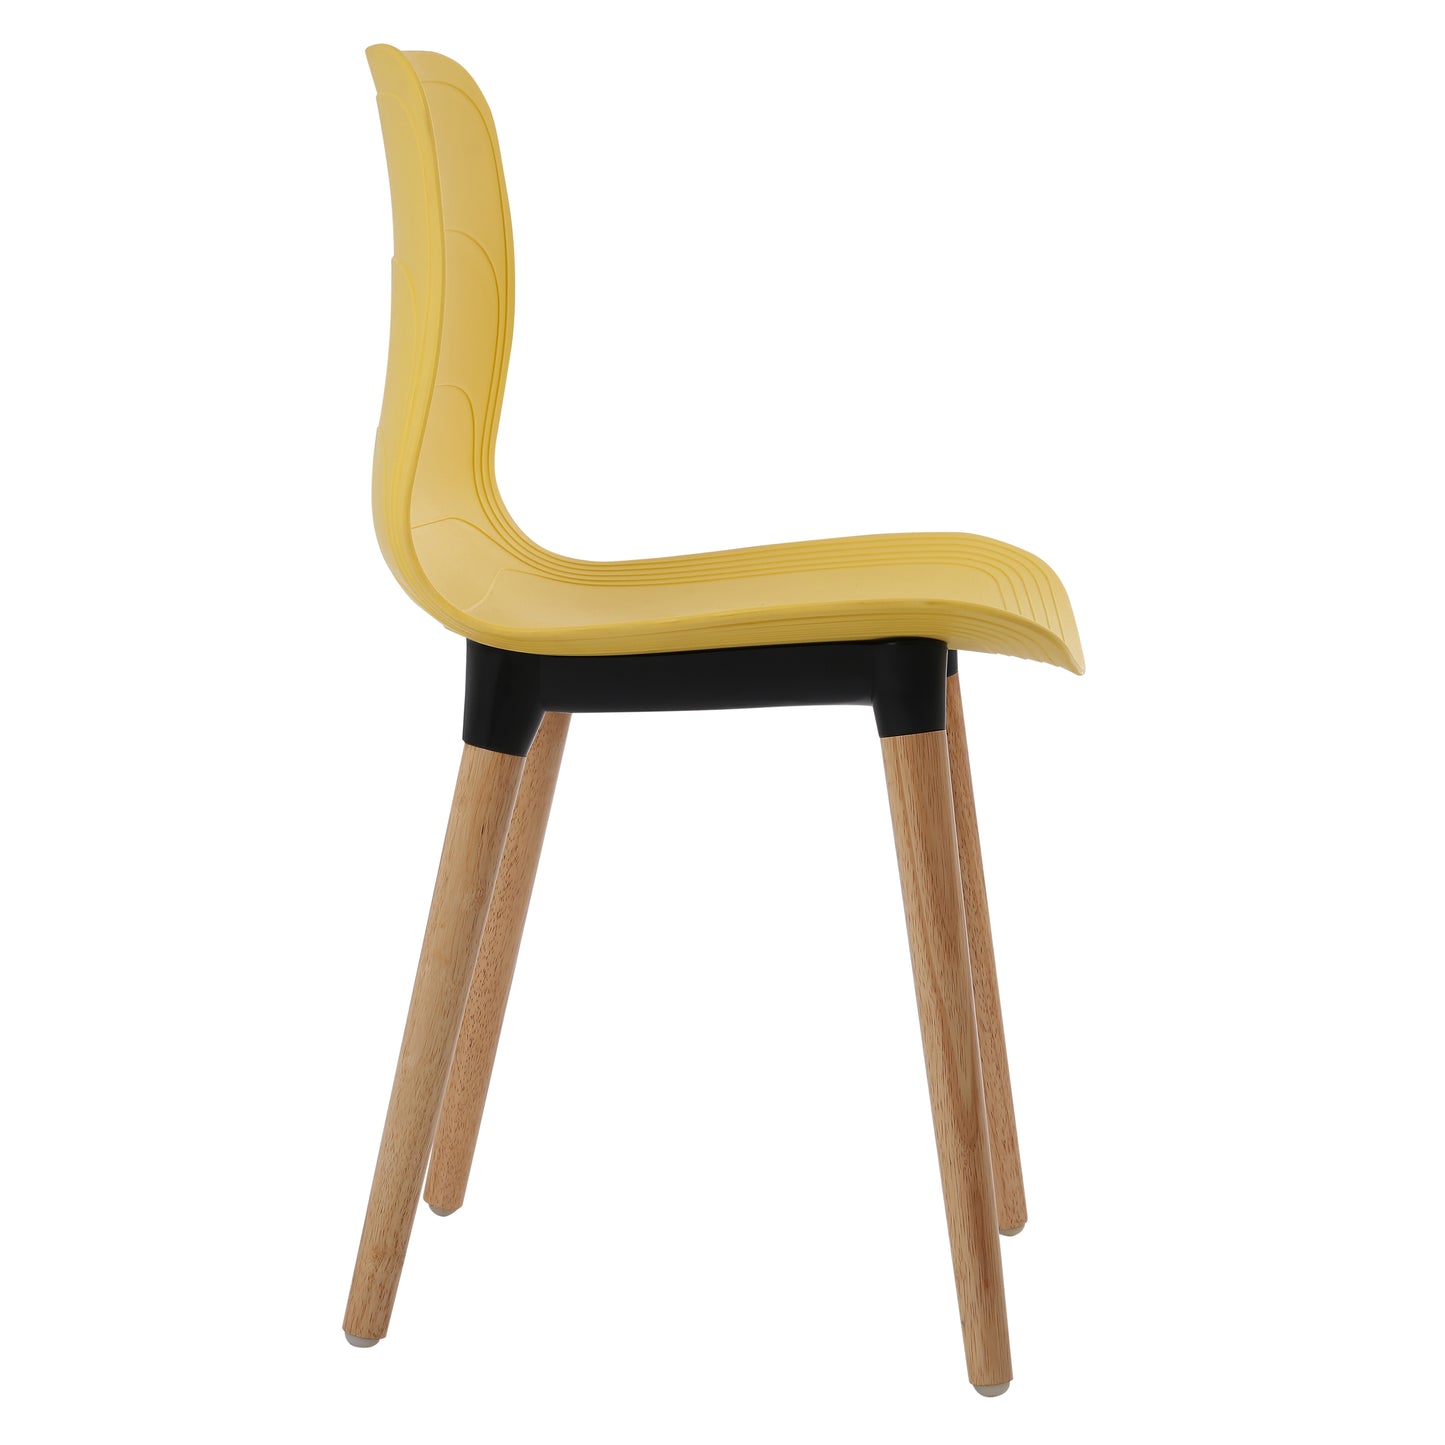 Ghế nhựa chân gỗ - HIFUWA-G (Vàng)